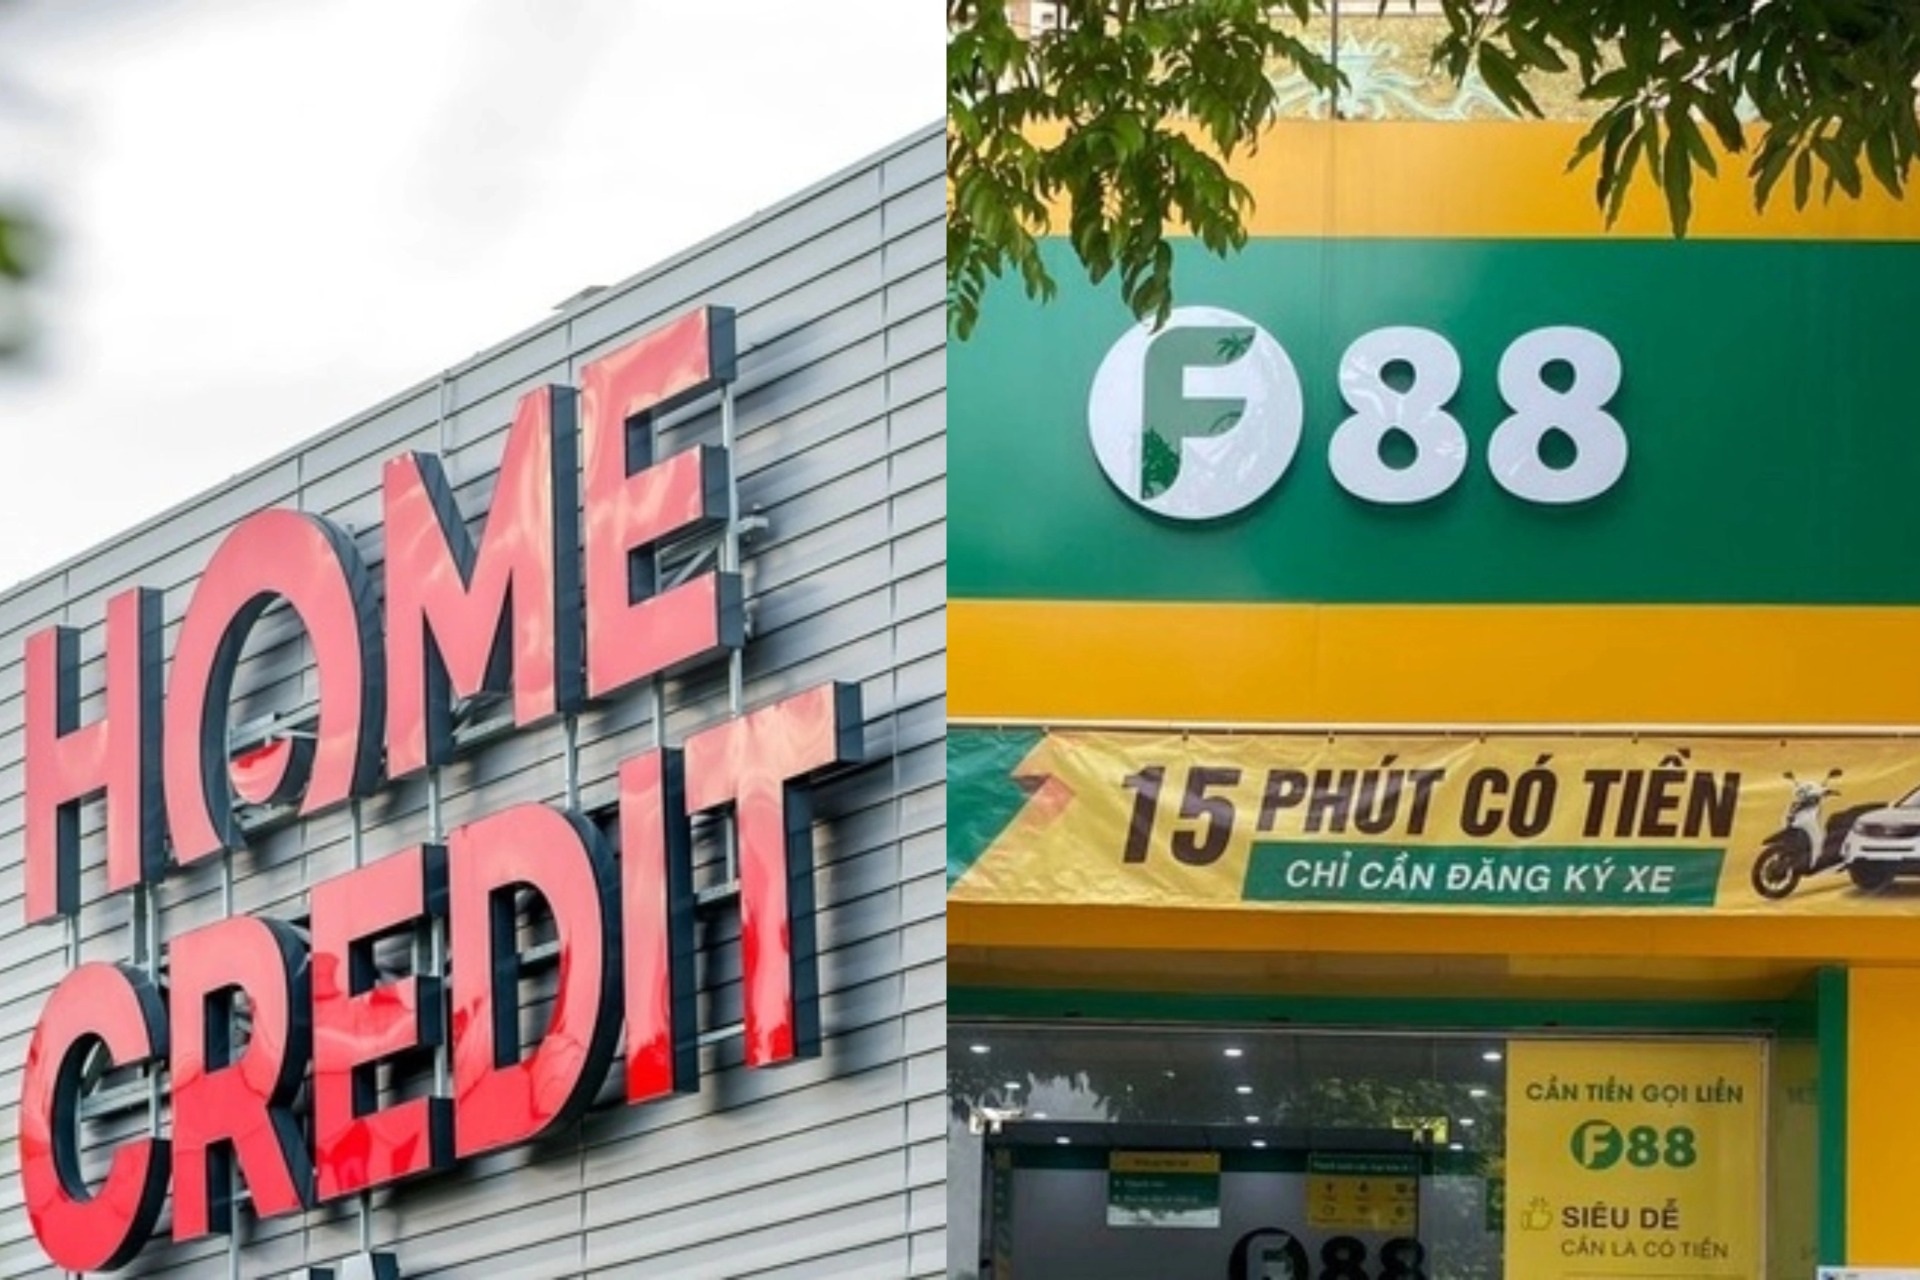 Home Credit và F88 giảm lãi sốc